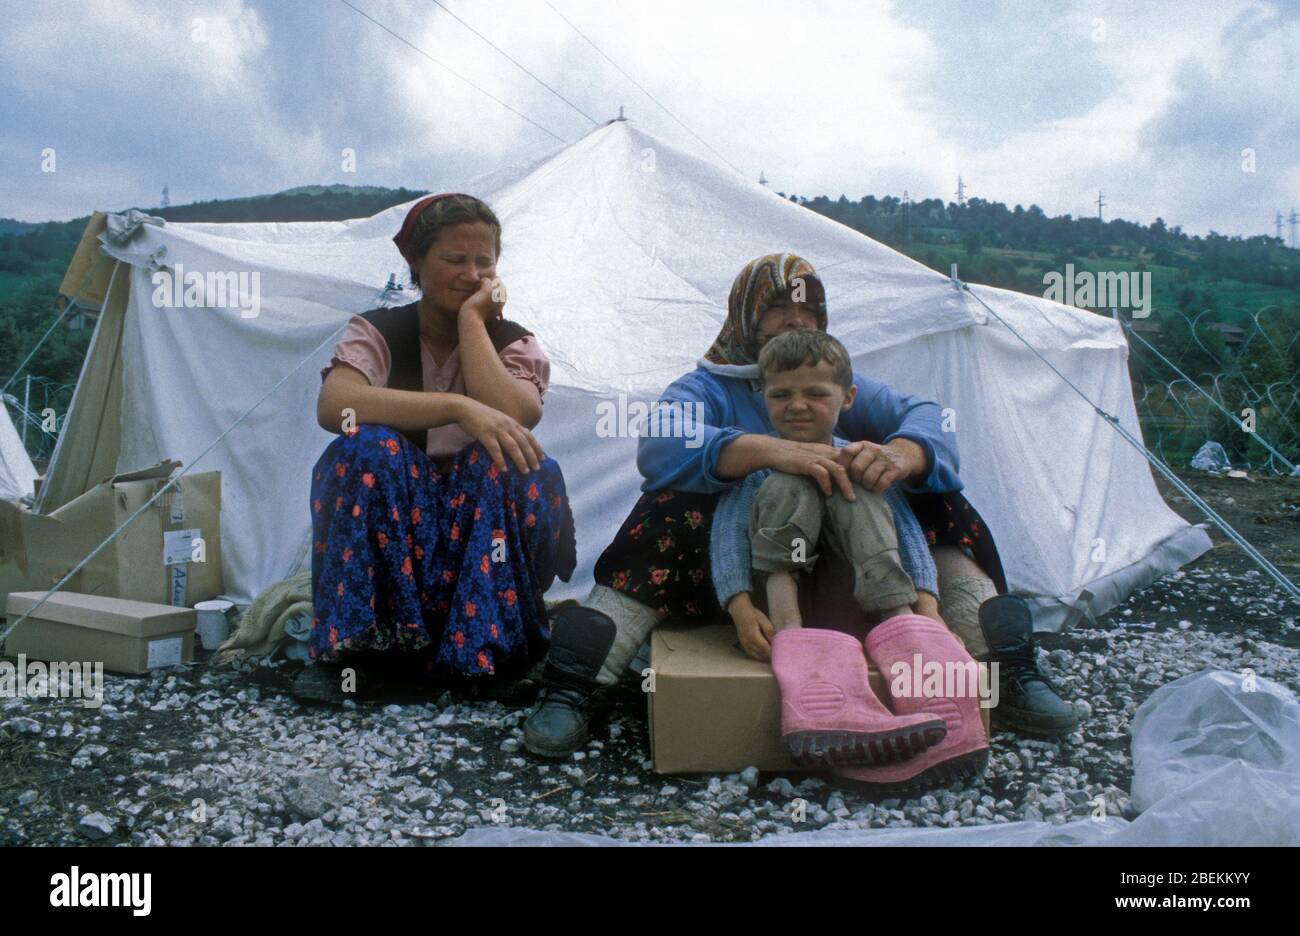 1995 Zenica, Bosnien - Großmutter, Tochter und Kind aus derselben Familie von Flüchtlingen, die vor den Kämpfen in Zenica geflohen sind, finden Zuflucht in einem temporären Flüchtlingslager der Vereinten Nationen in der Nähe von Zenica Stockfoto